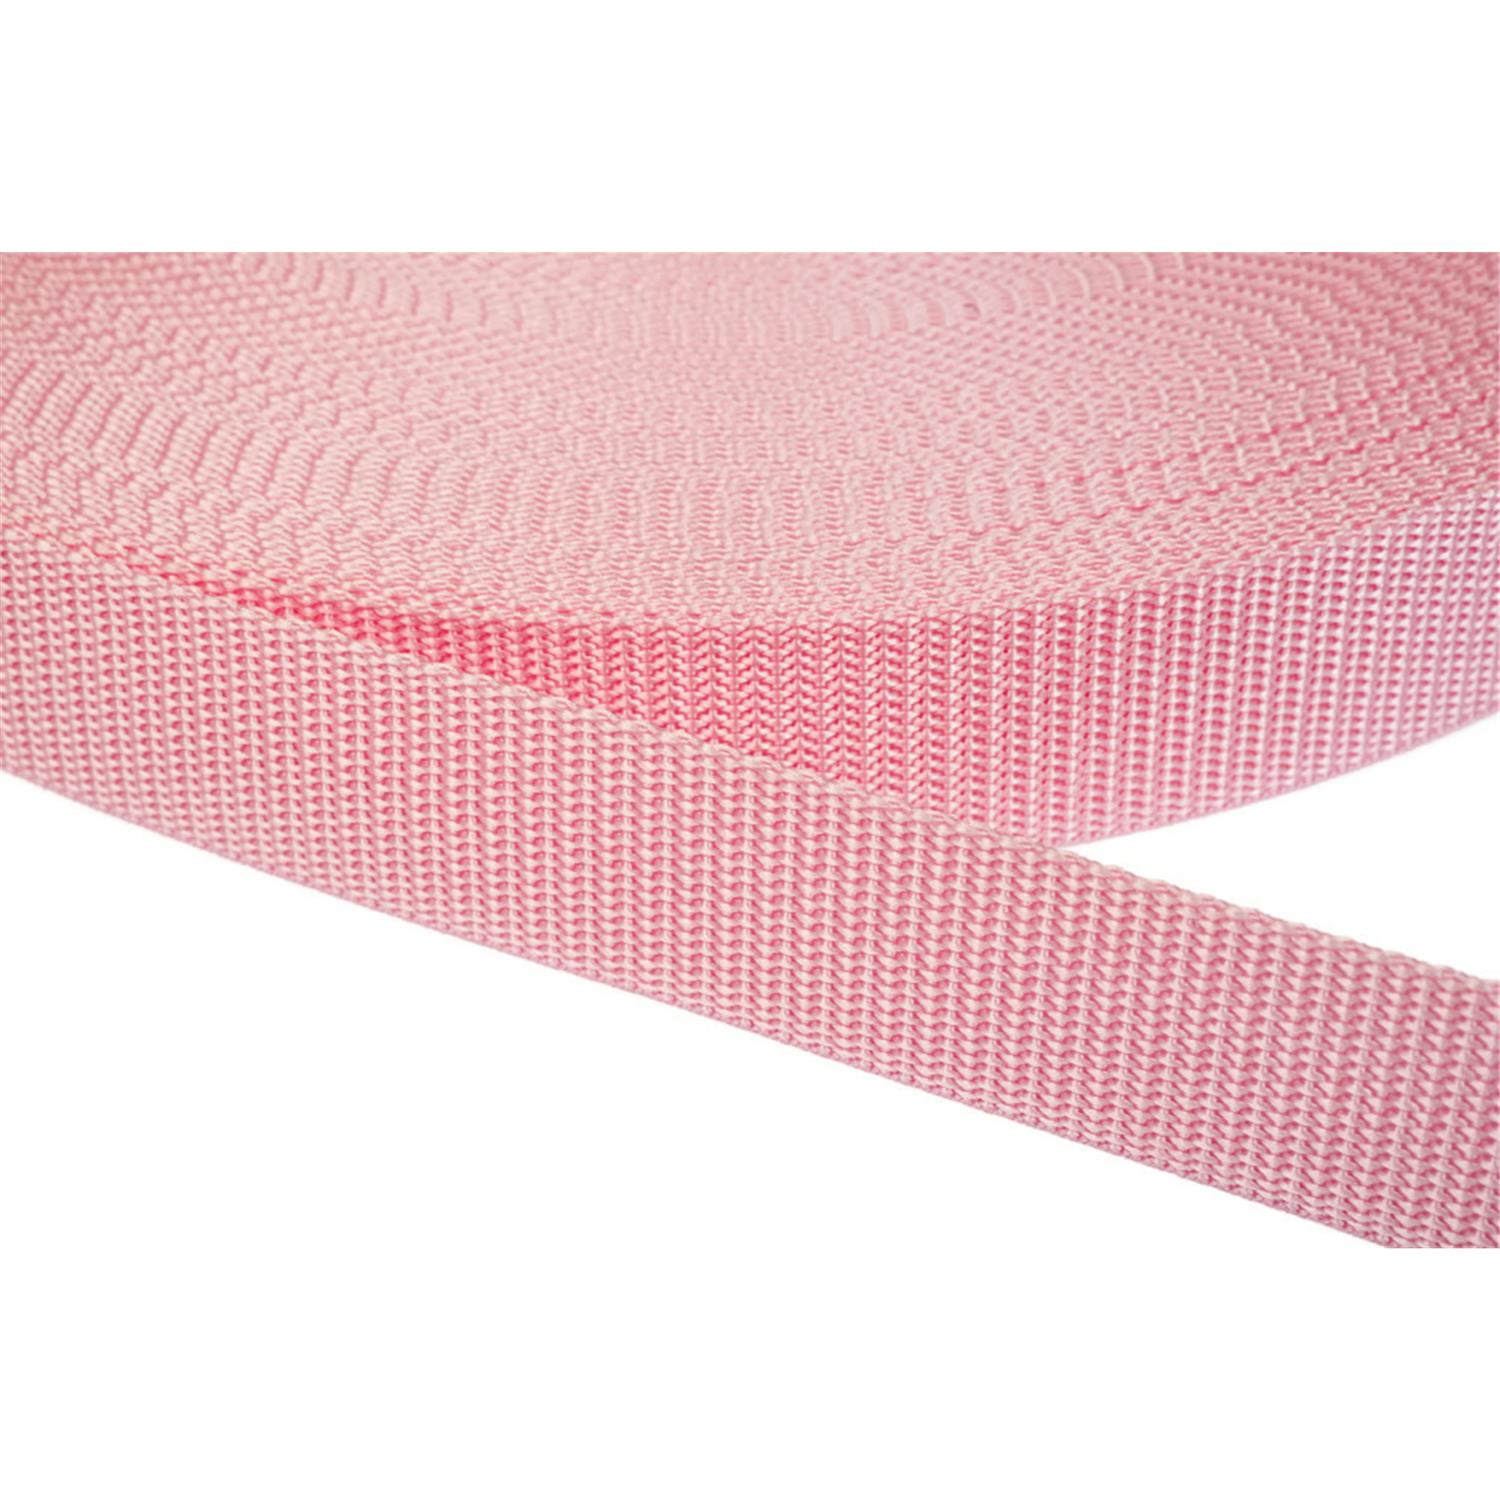 Gurtband 15mm breit aus Polypropylen in 41 Farben 12 - rosa 50 Meter